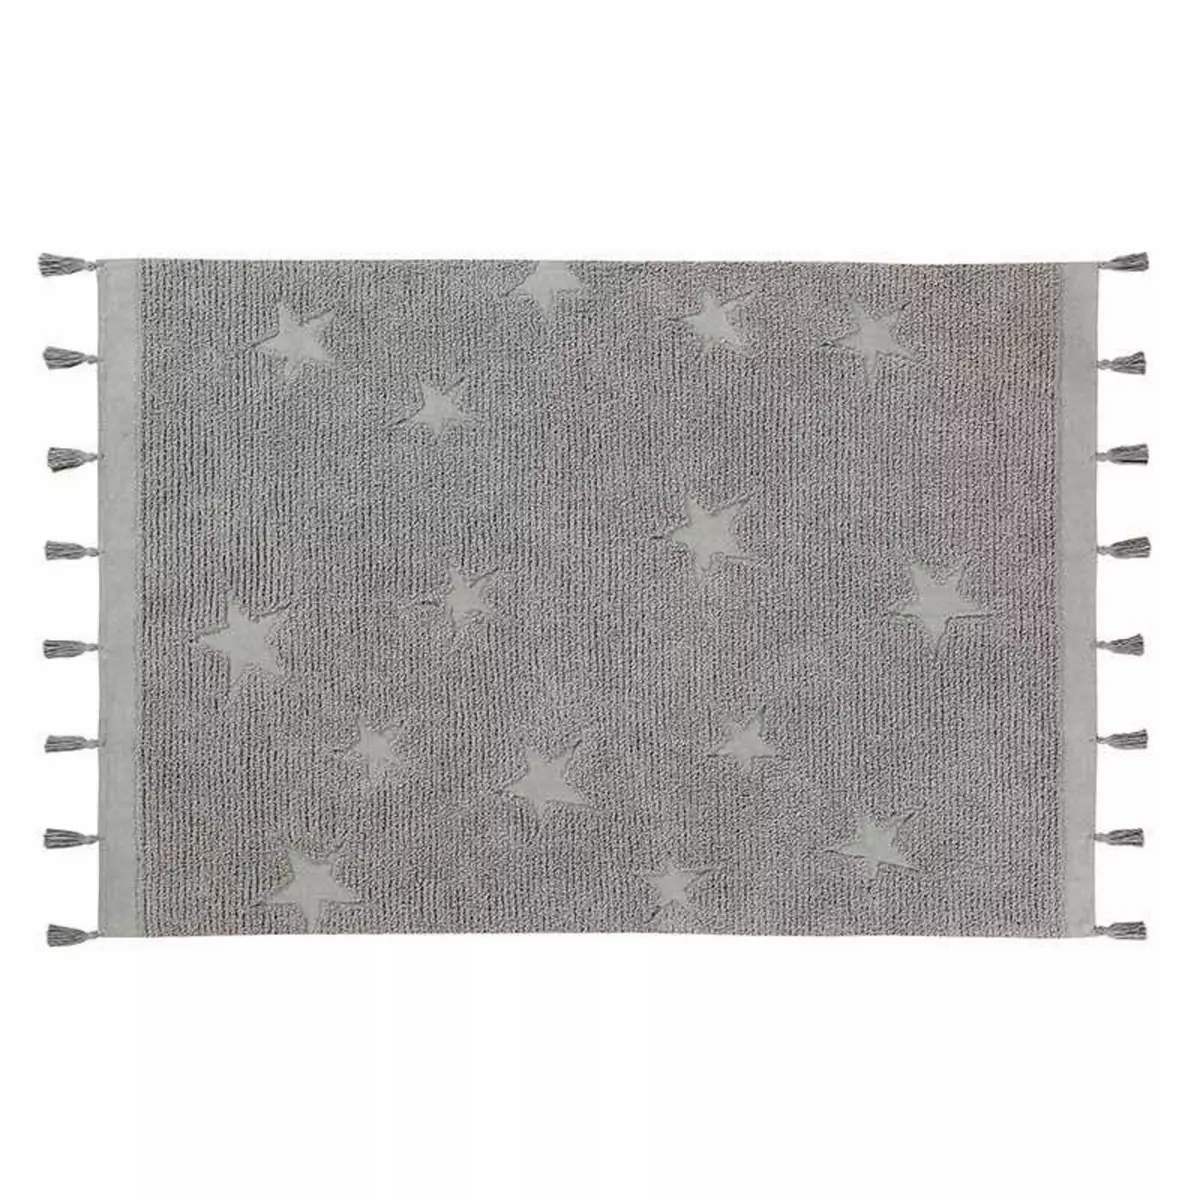 Lorena Canals Tapis coton motif star - gris - 120 x 175